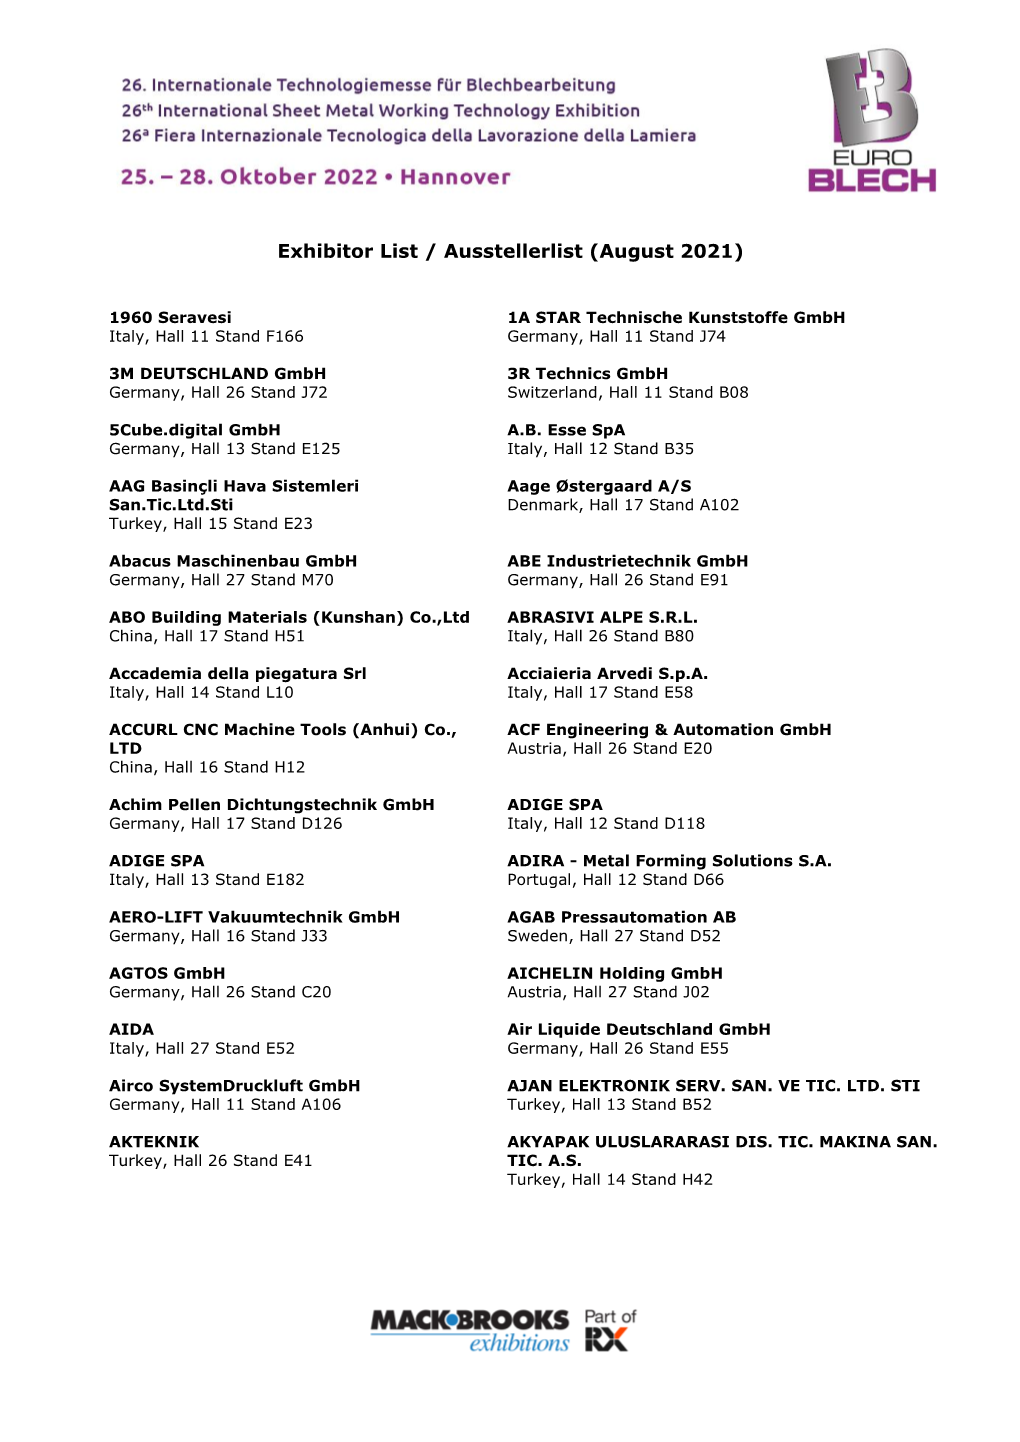 Exhibitor List / Ausstellerlist (August 2021)